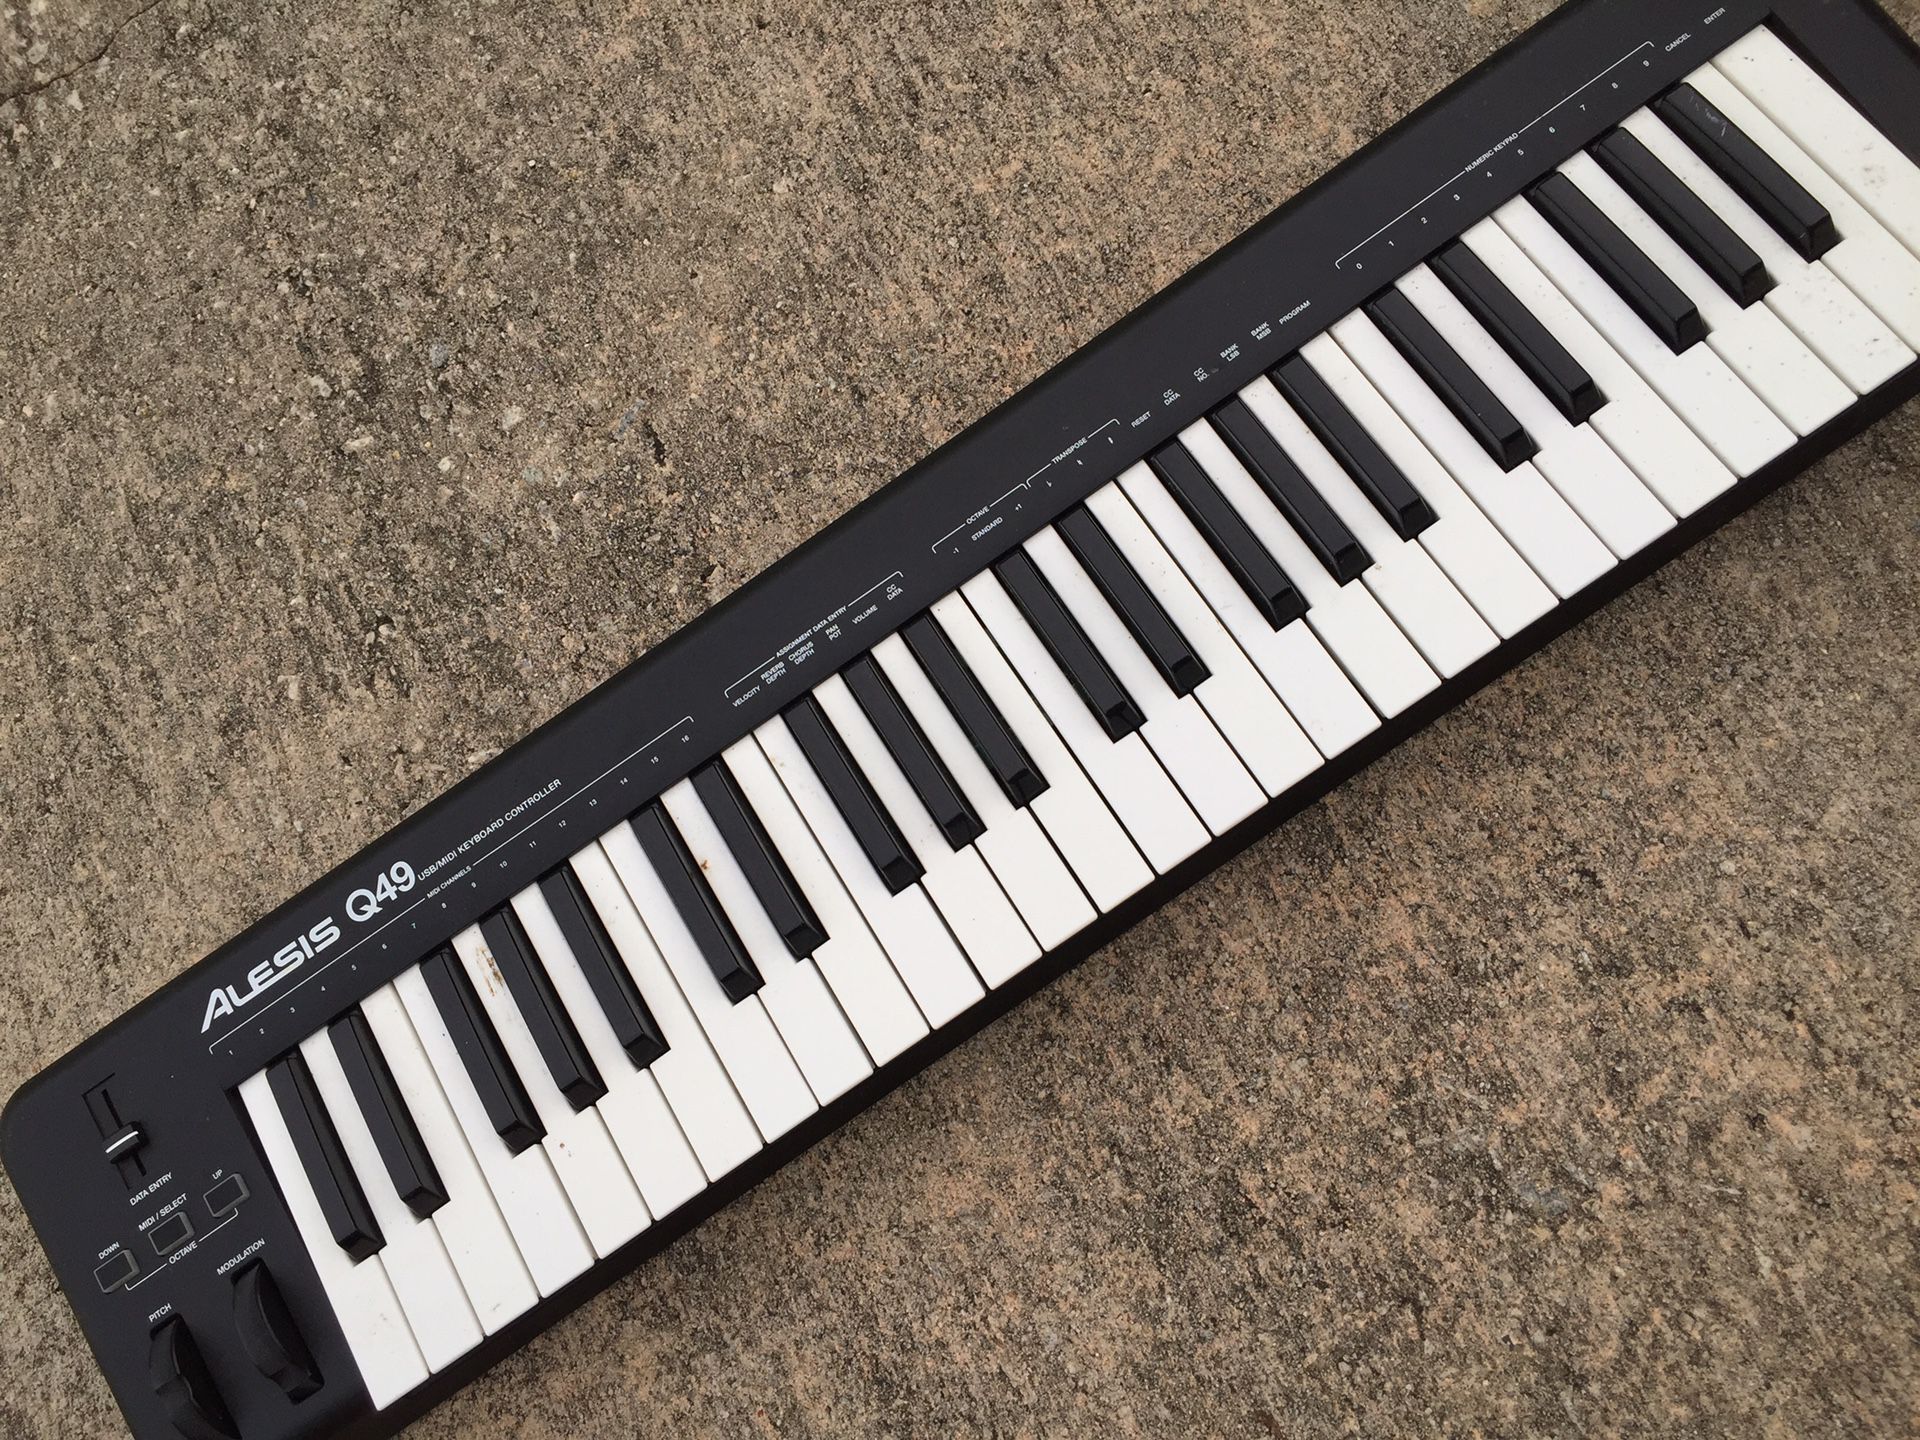 Alesis Q49 music keyboard $50